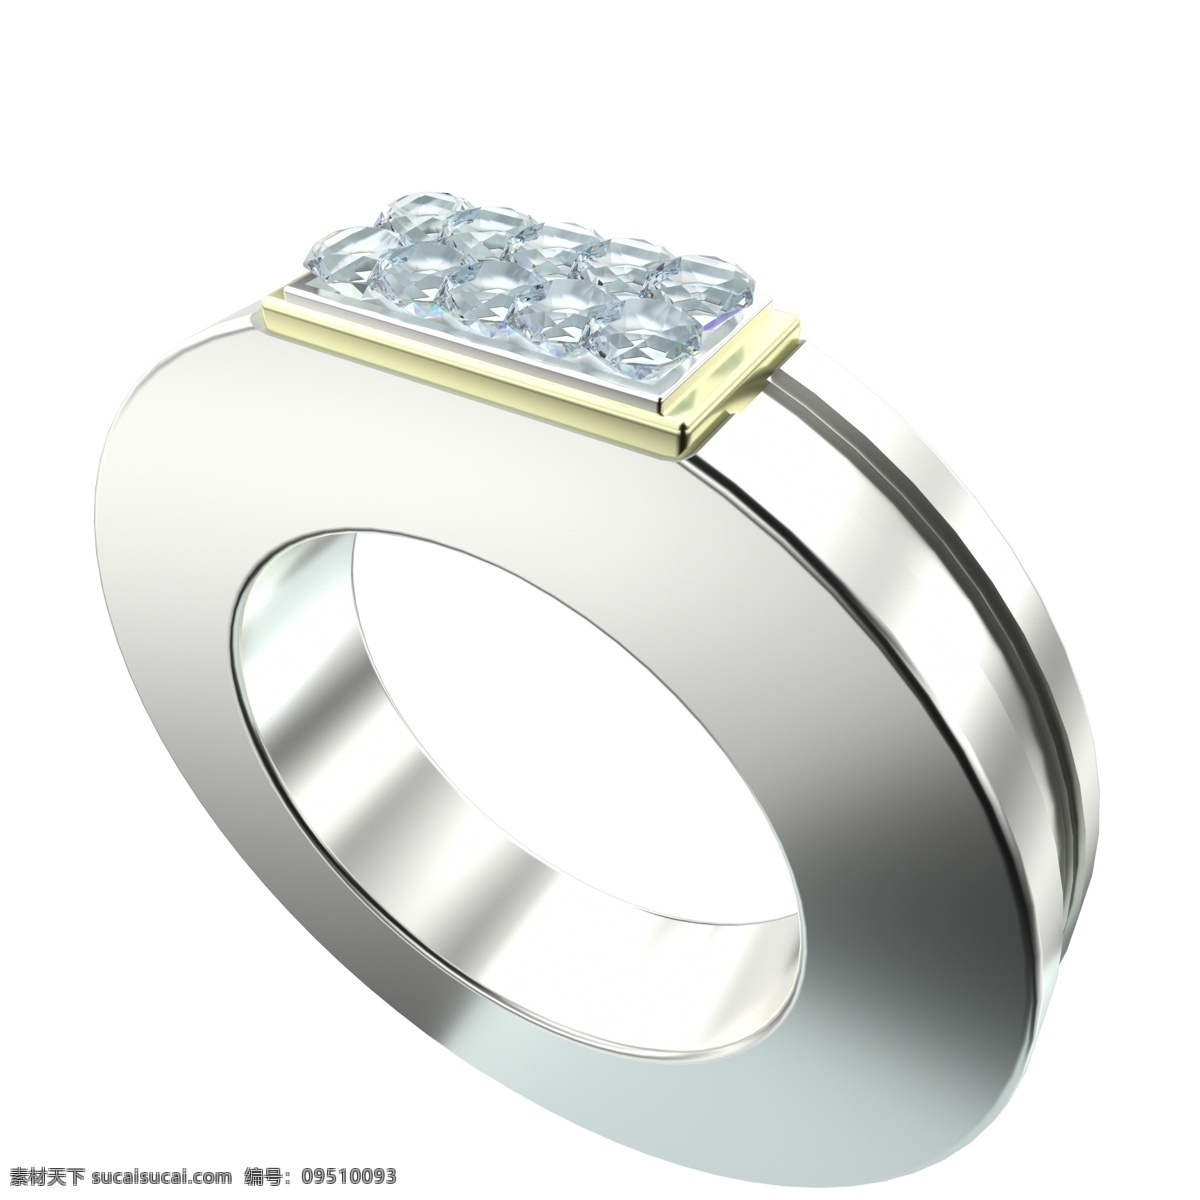 3d 男士 钻石 戒指 c4d 钻石项链 金属链子 金色链子 结婚 求婚 订婚 情侣 情人 女性 蓝色钻石 钻石戒指